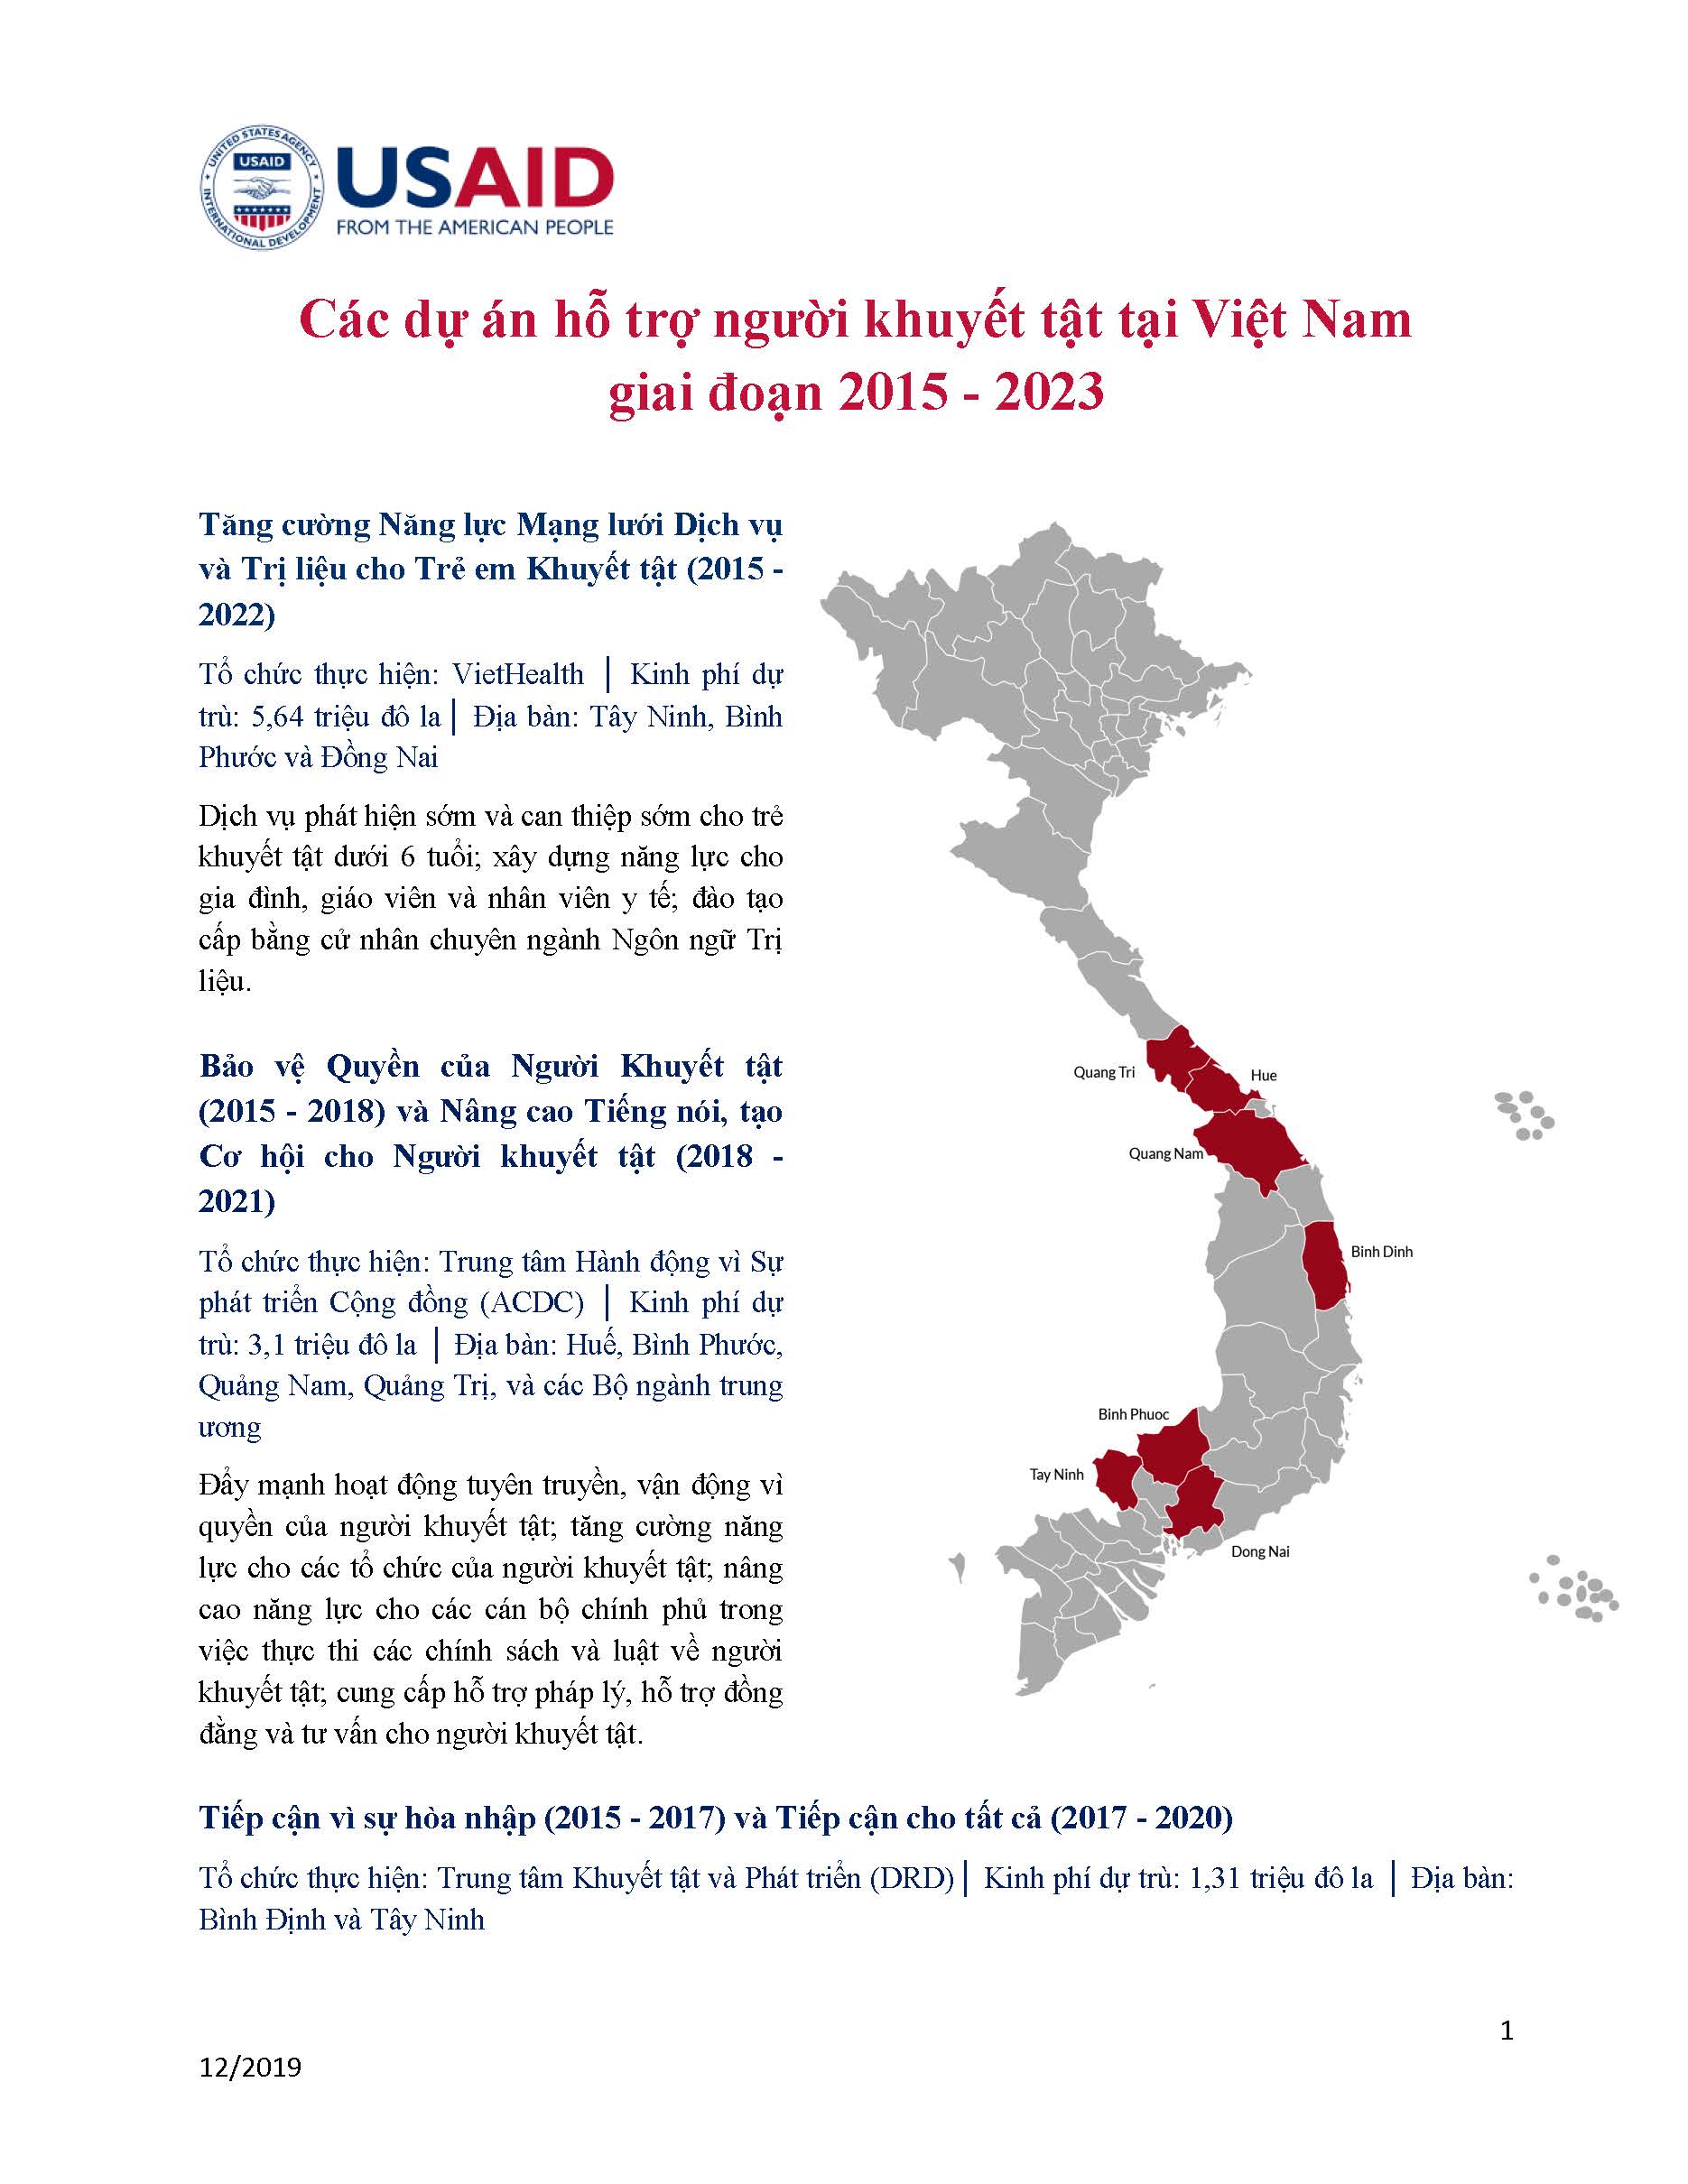 Tờ thông tin: Các dự án hỗ trợ người khuyết tật tại Việt Nam giai đoạn 2015 - 2023